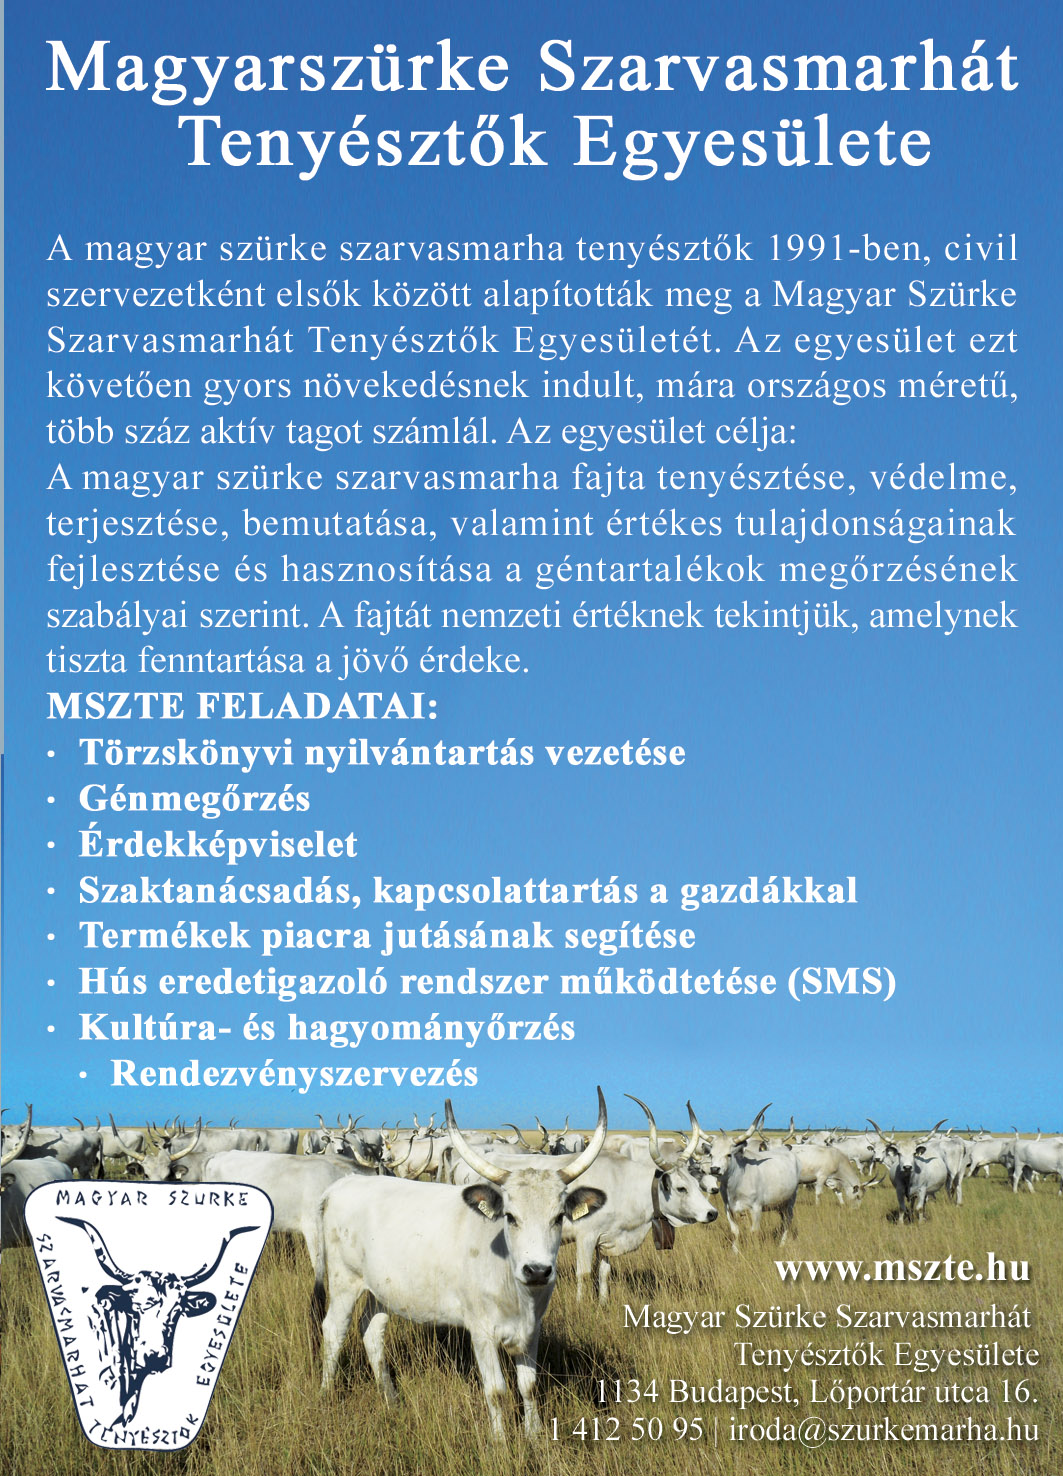 Magyar Szürke Szarvasmarhát Tenyésztők Egyesülete, törzskönyvi nyilvántartás, génmegőrzés